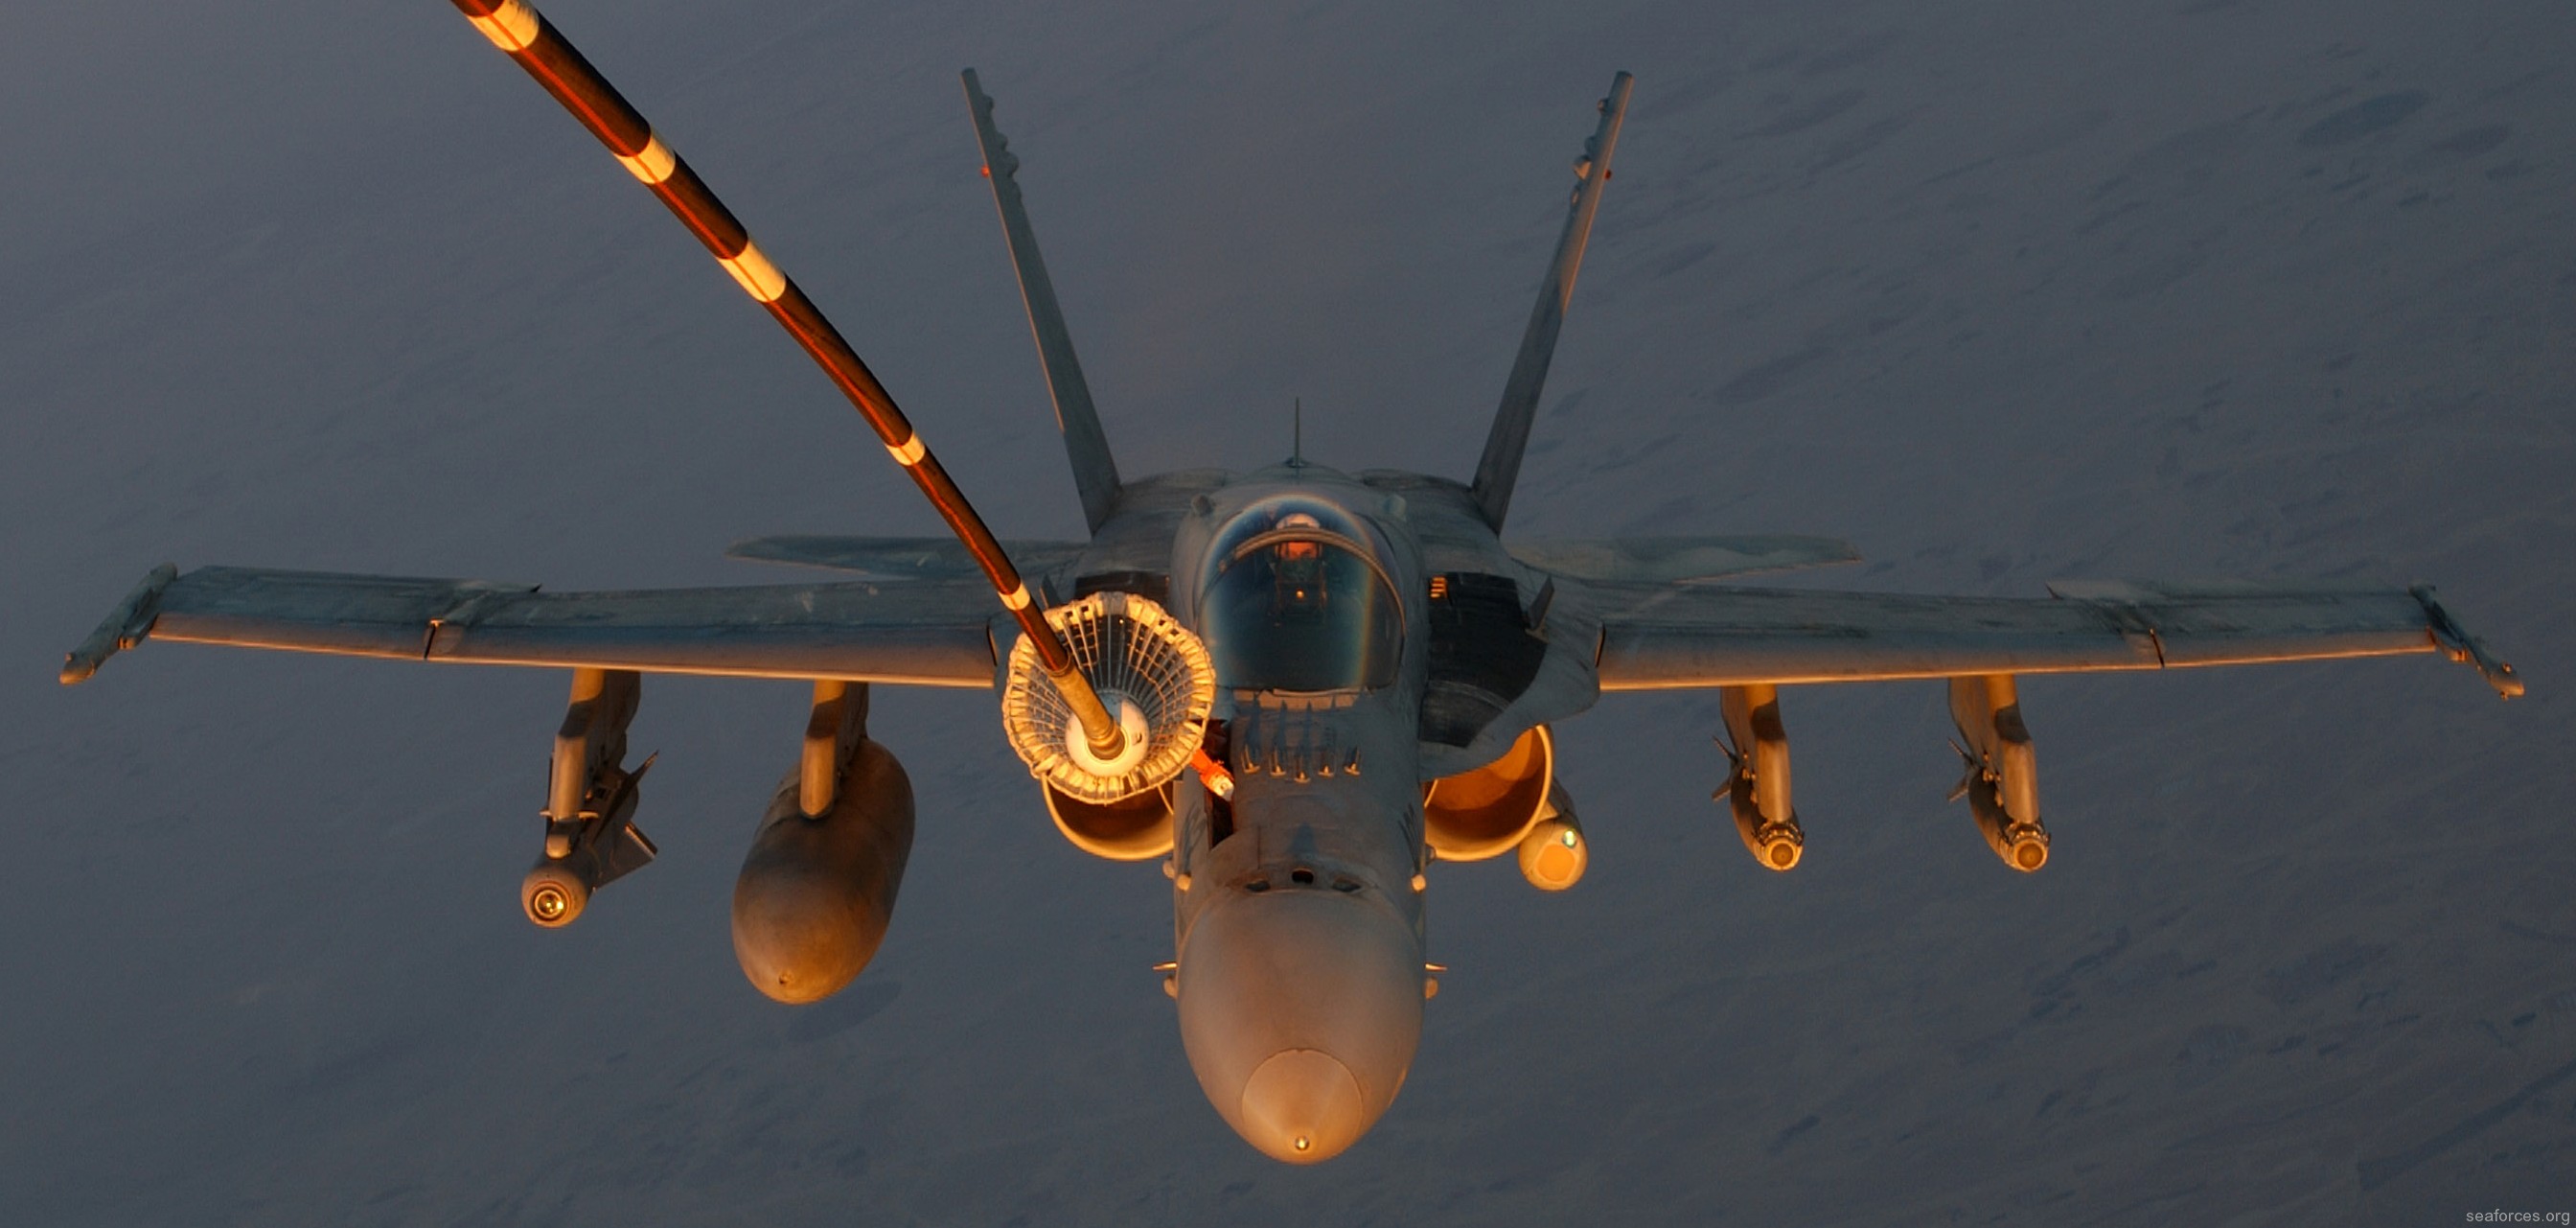 vmfa-115 silver eagles marine fighter attack squadron f/a-18a+ hornet 09